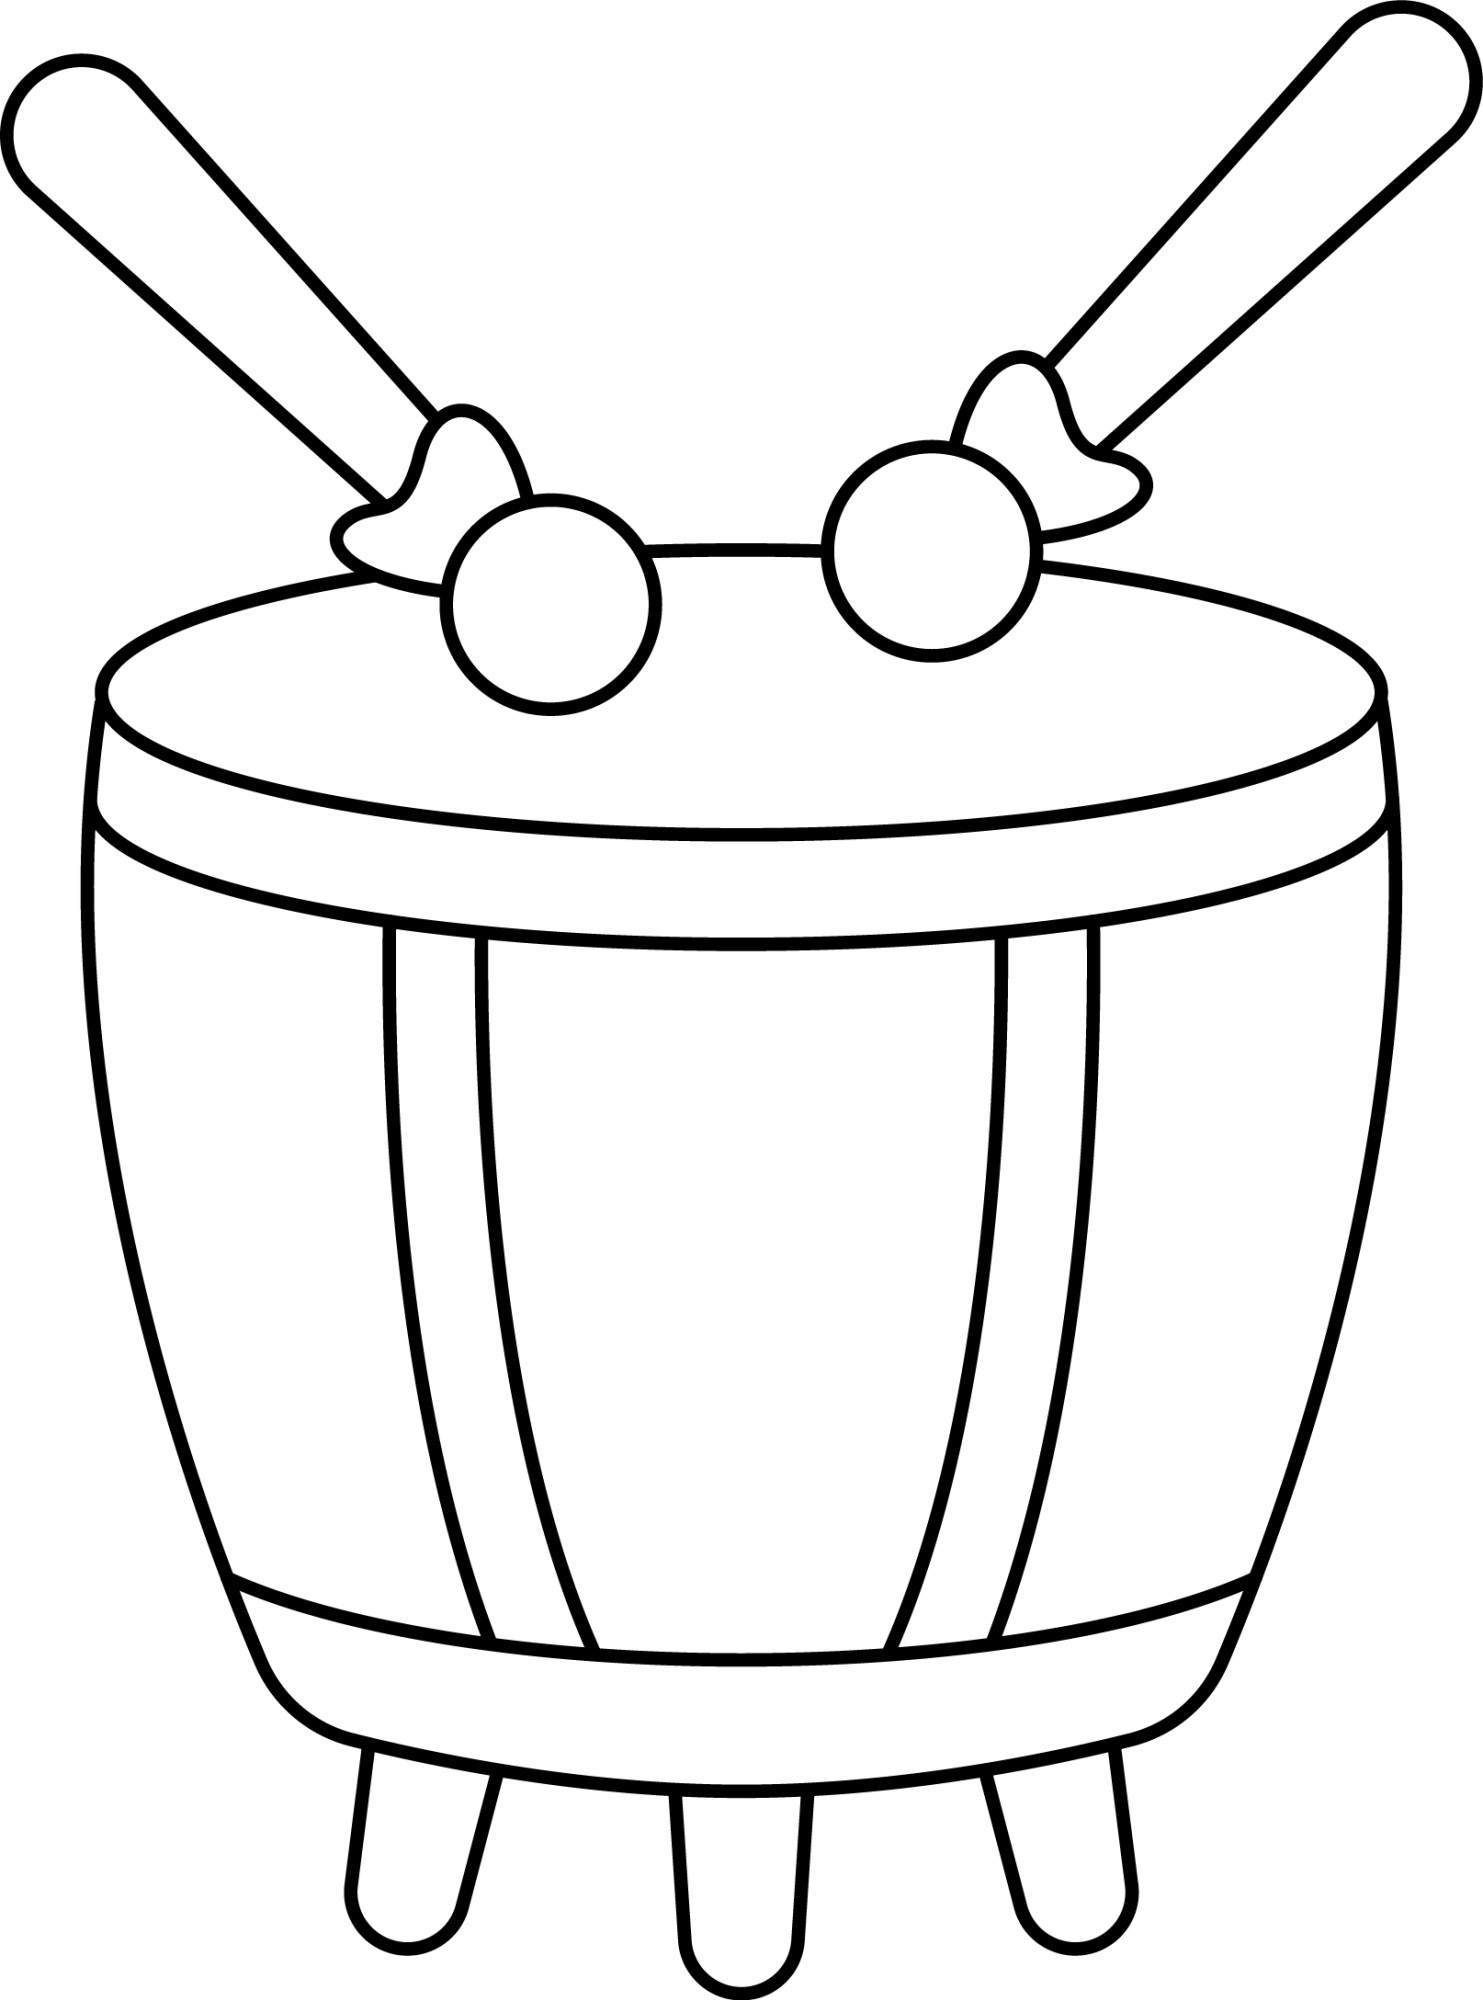 Раскраска для детей: игрушка китайский барабан с палочками